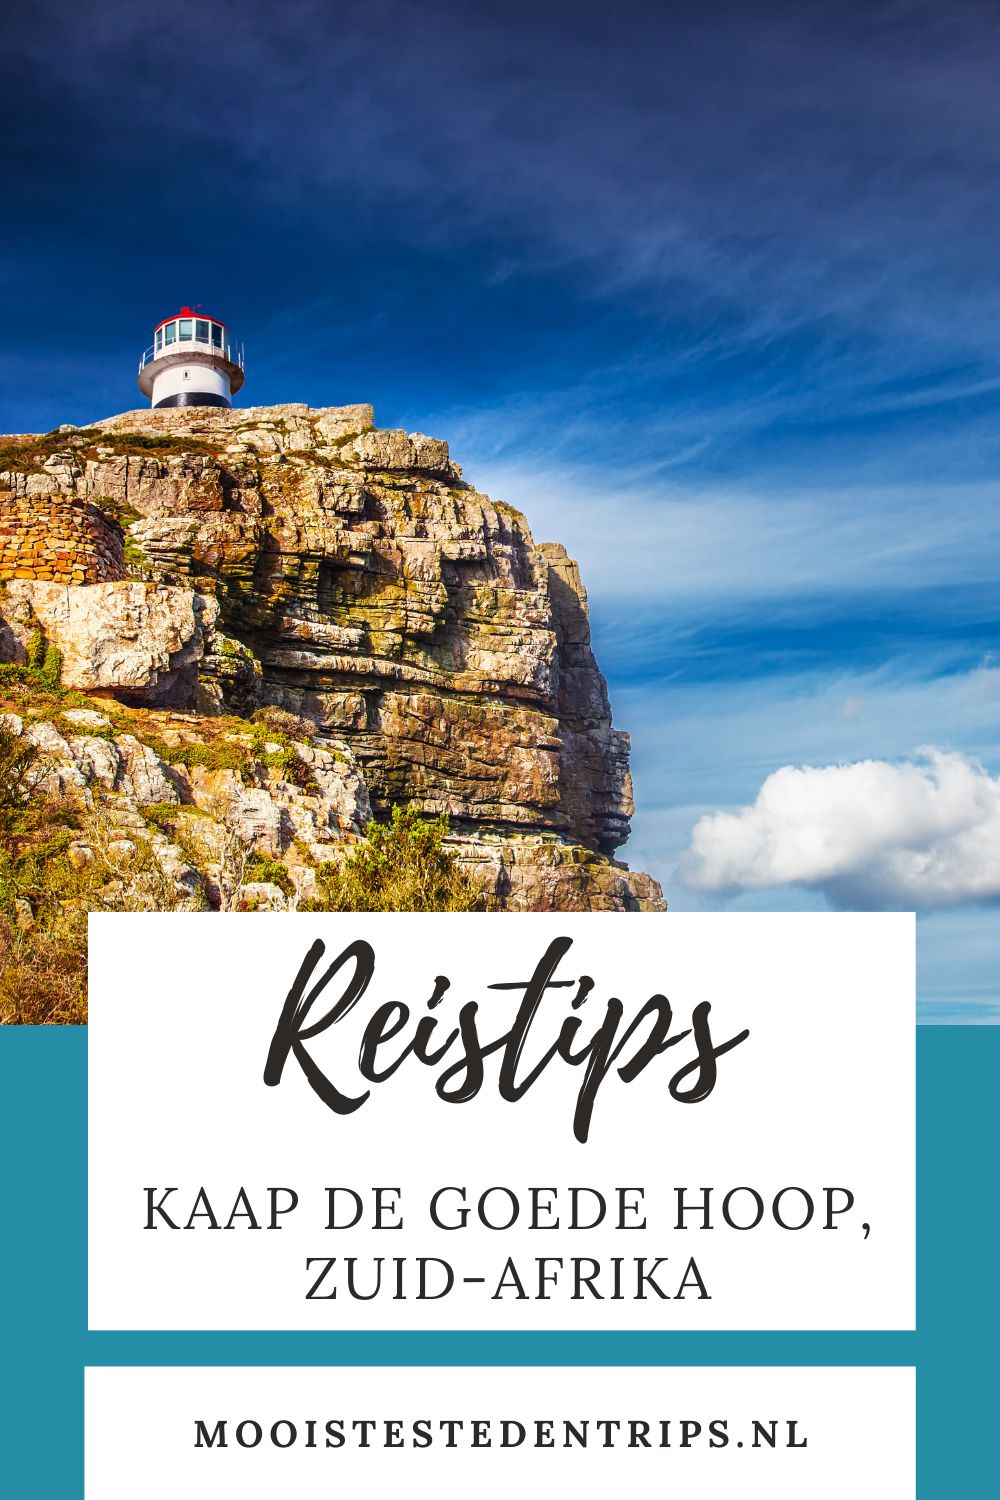 Kaap de Goede Hoop, Zuid-Afrika. Wil je een dagtrip Kaap de Goede Hoop maken? Ontdek de mooiste bezienswaardigheden in en rond Kaap de Goede Hoop, Zuid-Afrika | Mooistestedentrips.nl